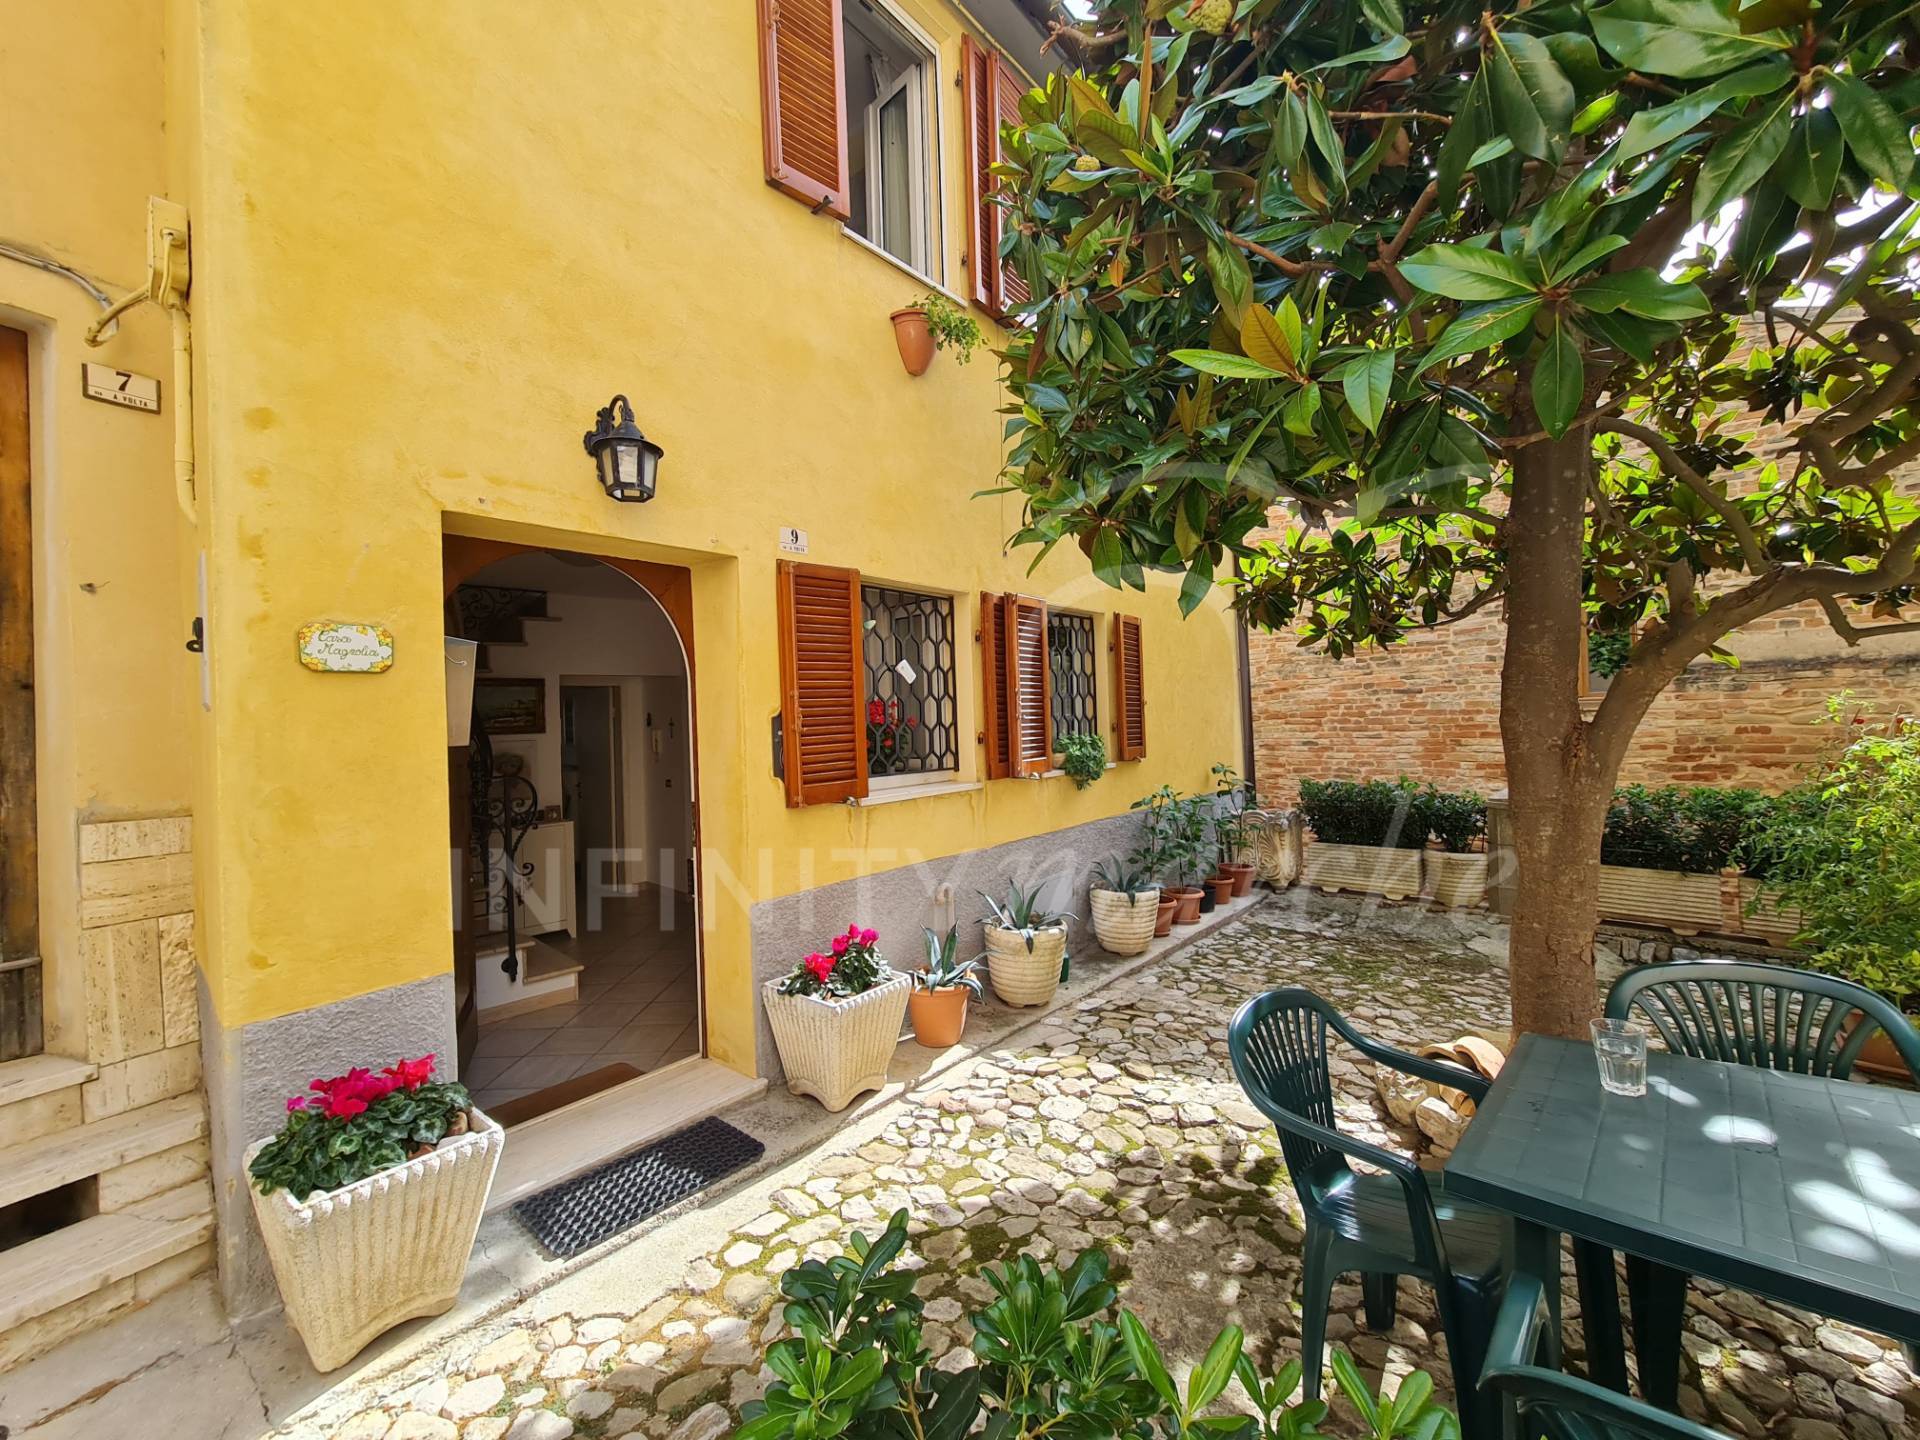 House in Montalto delle Marche (Ascoli Piceno)